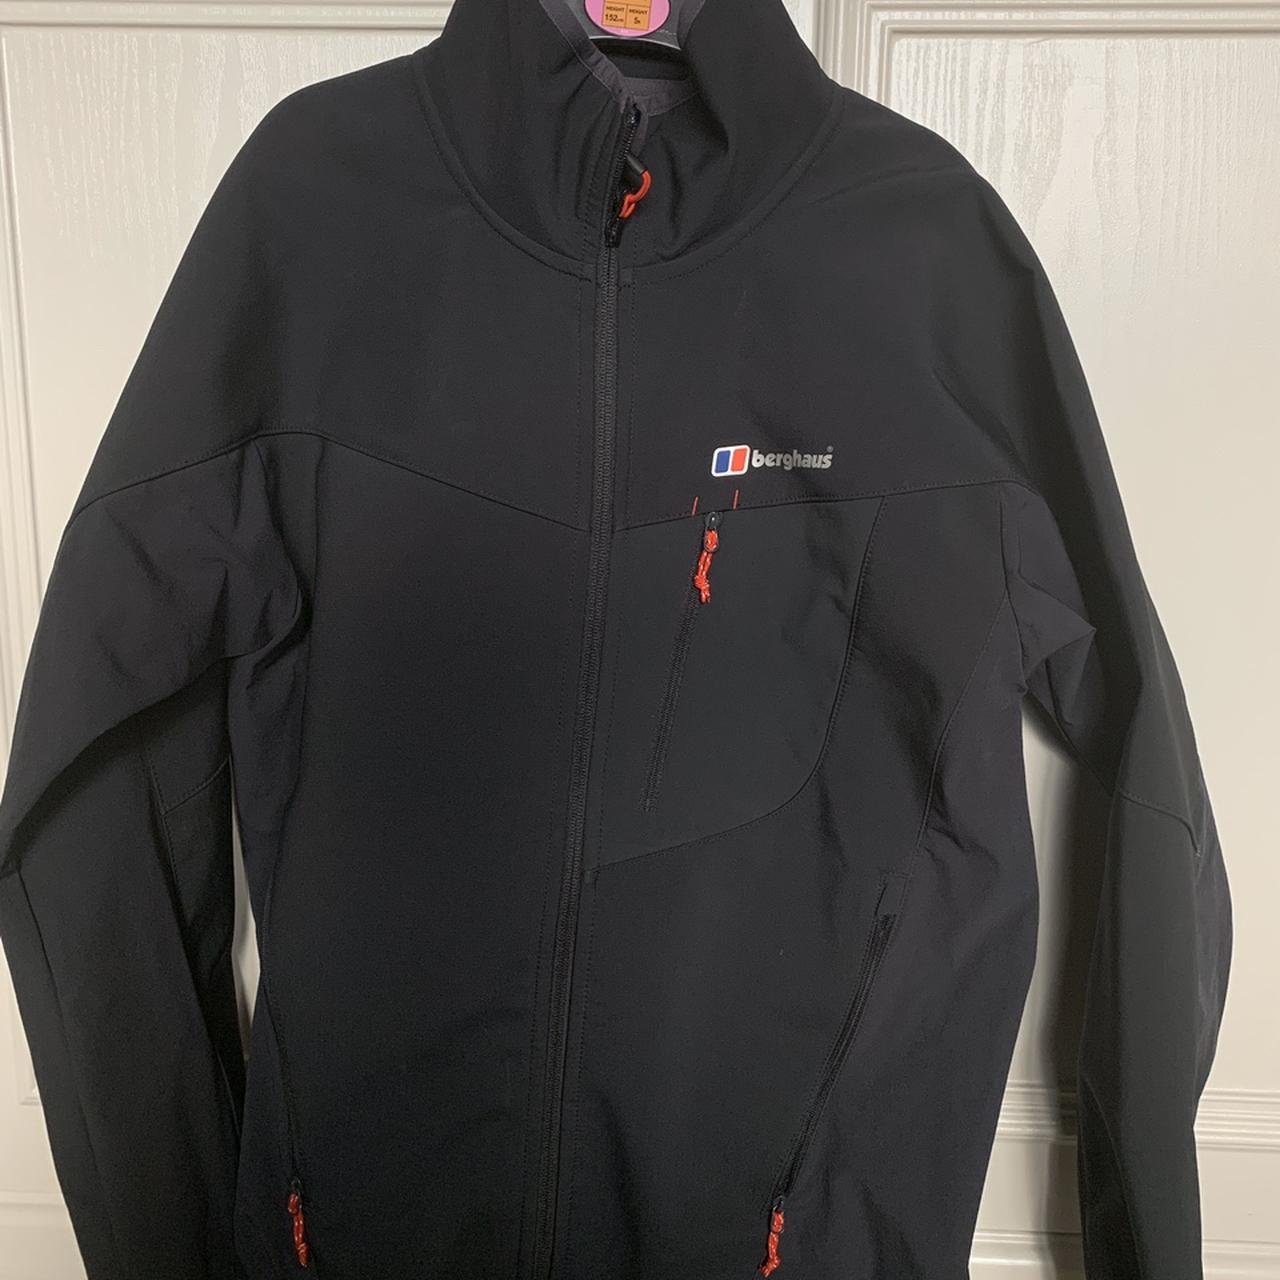 Berghaus waterproof jacket, worn twice, in brand new... - Depop